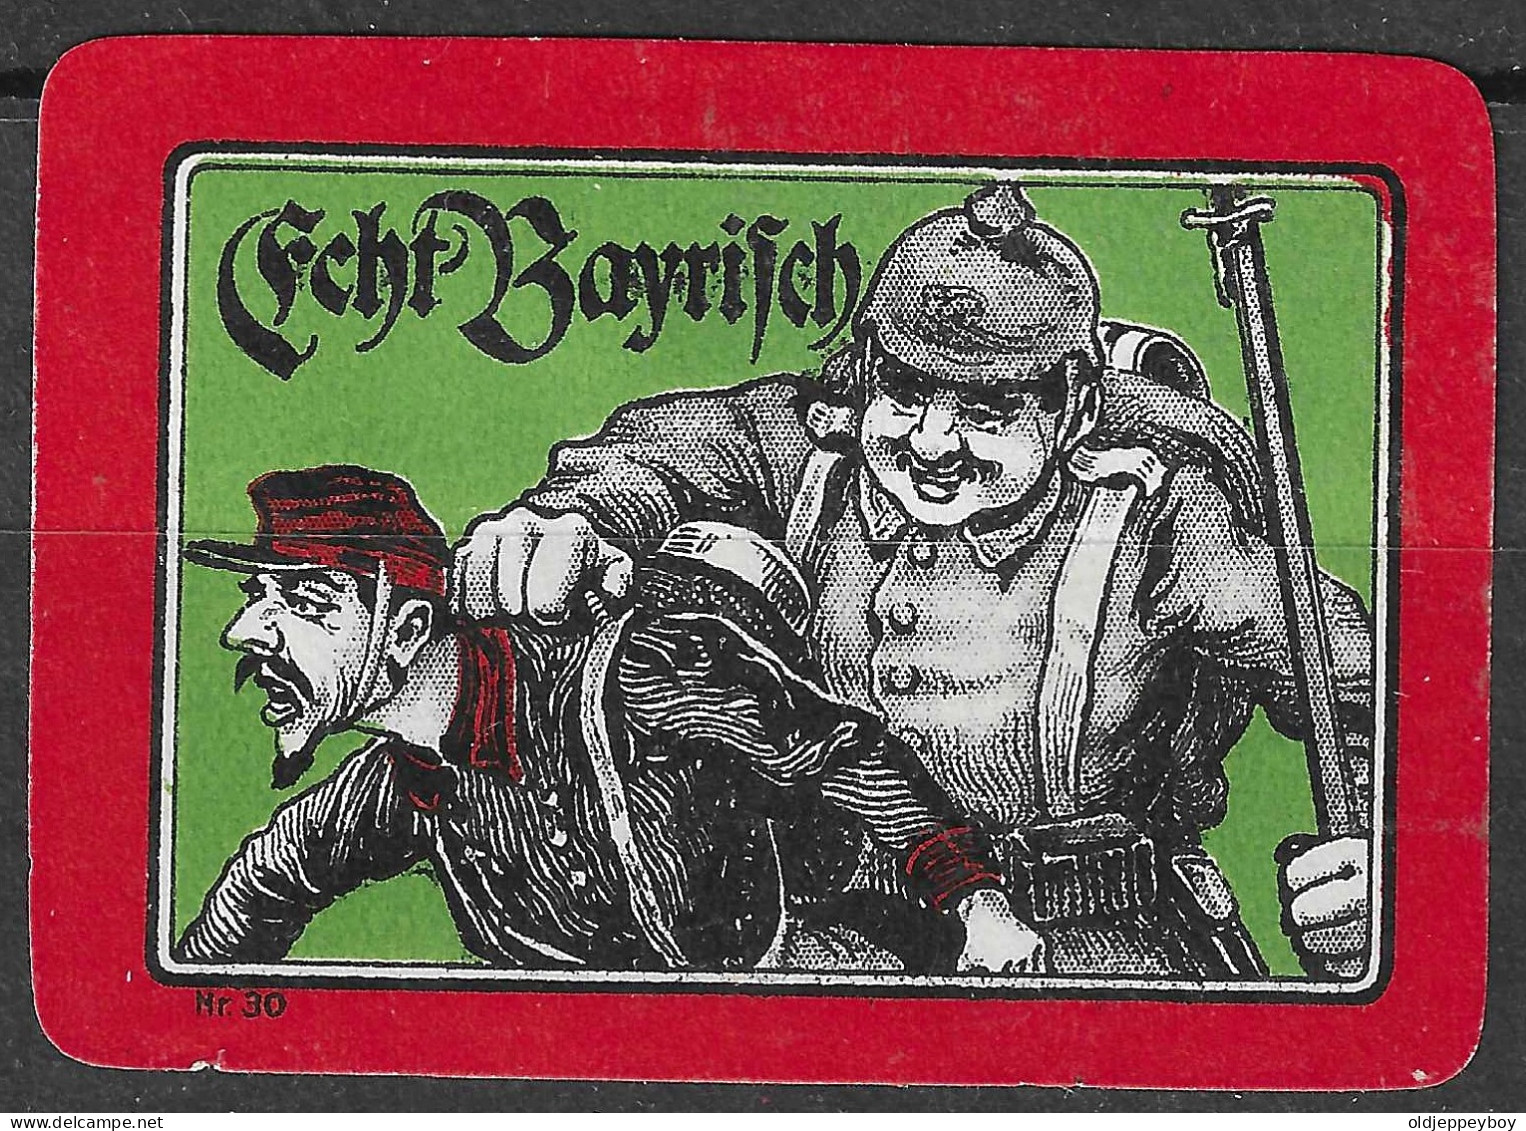 1914 DEUTSCHLAND WW1 GERMANY Propaganda Reklamemarke VIGNETTE Echt Bayrisch - Guerre Mondiale (Première)